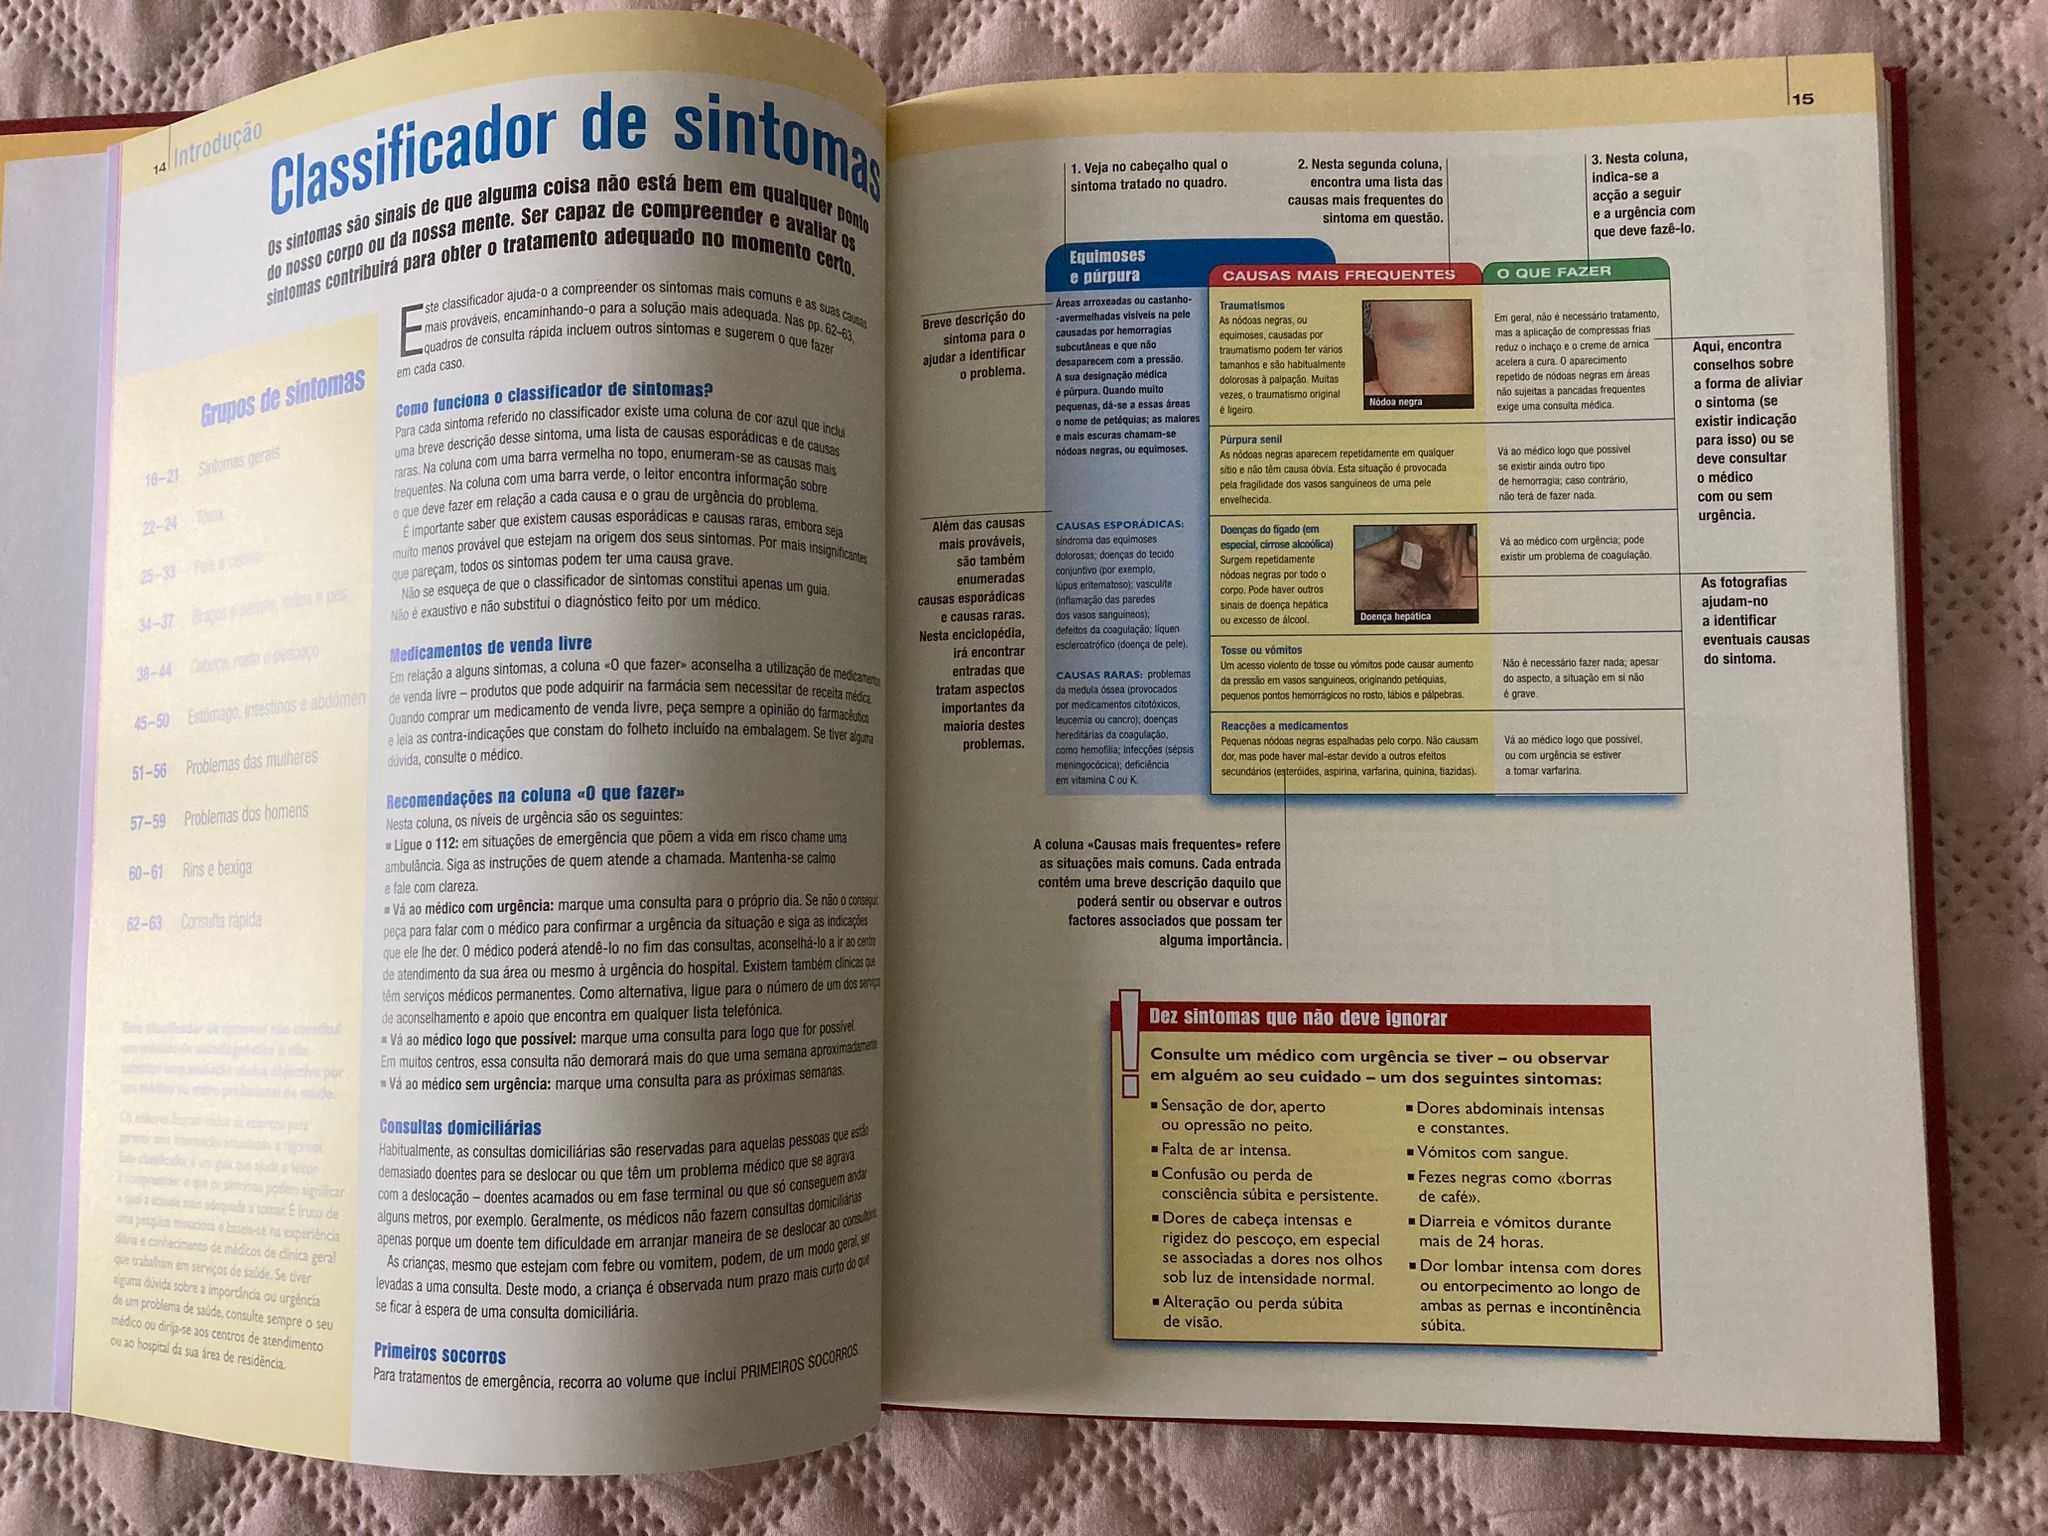 Nova Enciclopédia de Medicina e Saúde  - Volume 1 (Portes Grátis)